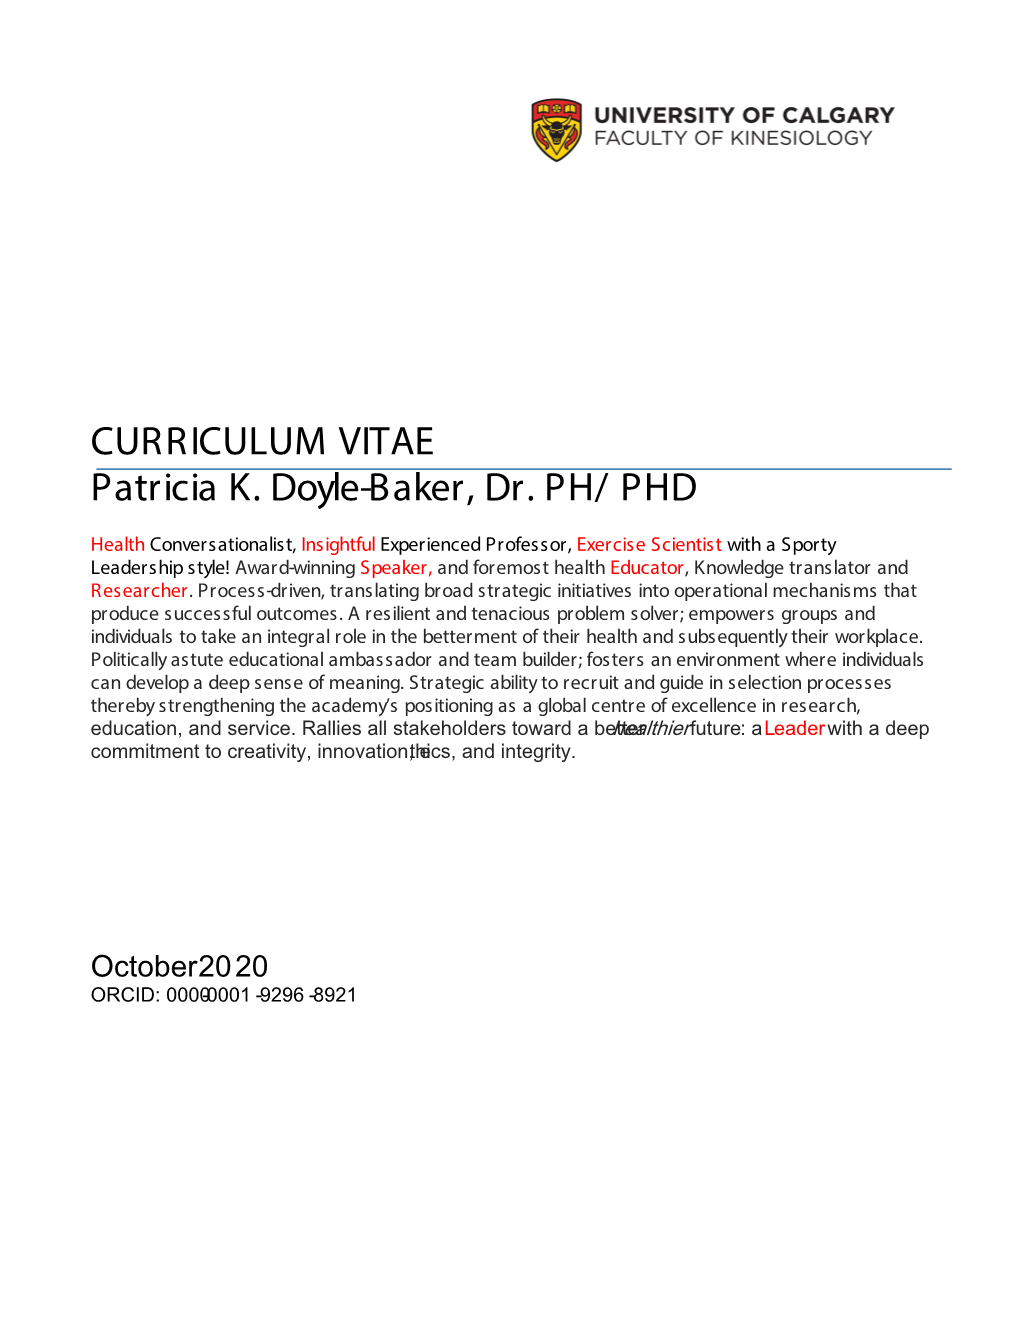 CURRICULUM VITAE Patricia K. Doyle-Baker, Dr. PH/ PHD